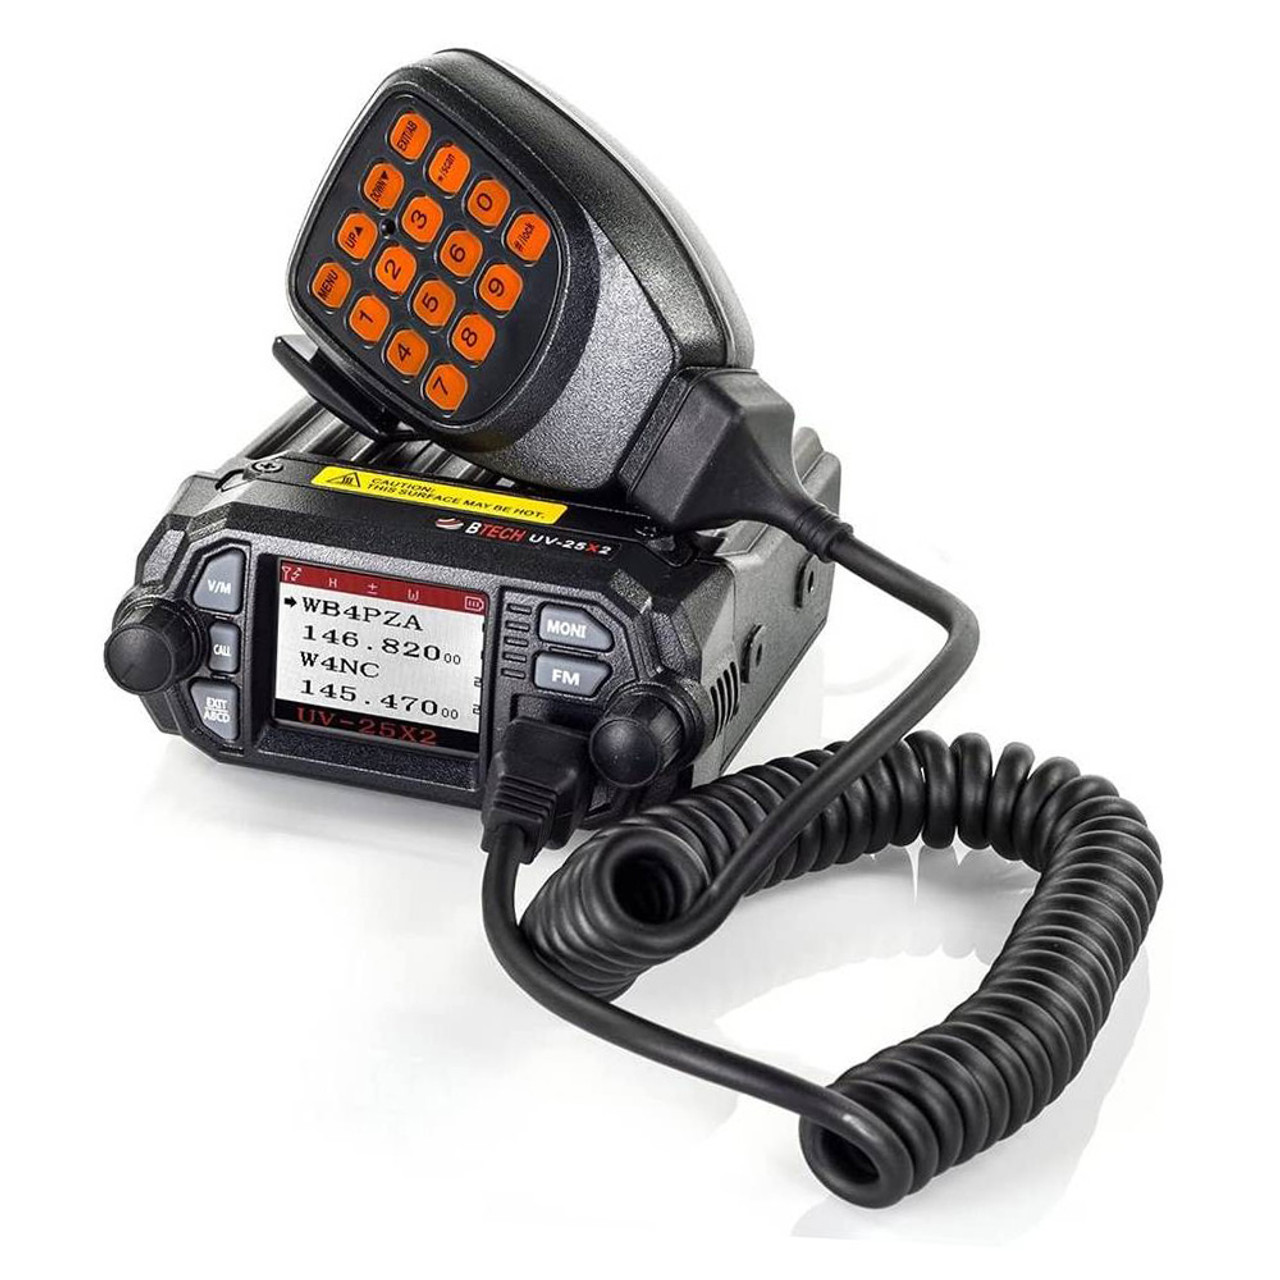 BTECH Mini UV-25X2 25 Watt Dual Band Base Mobile Radios